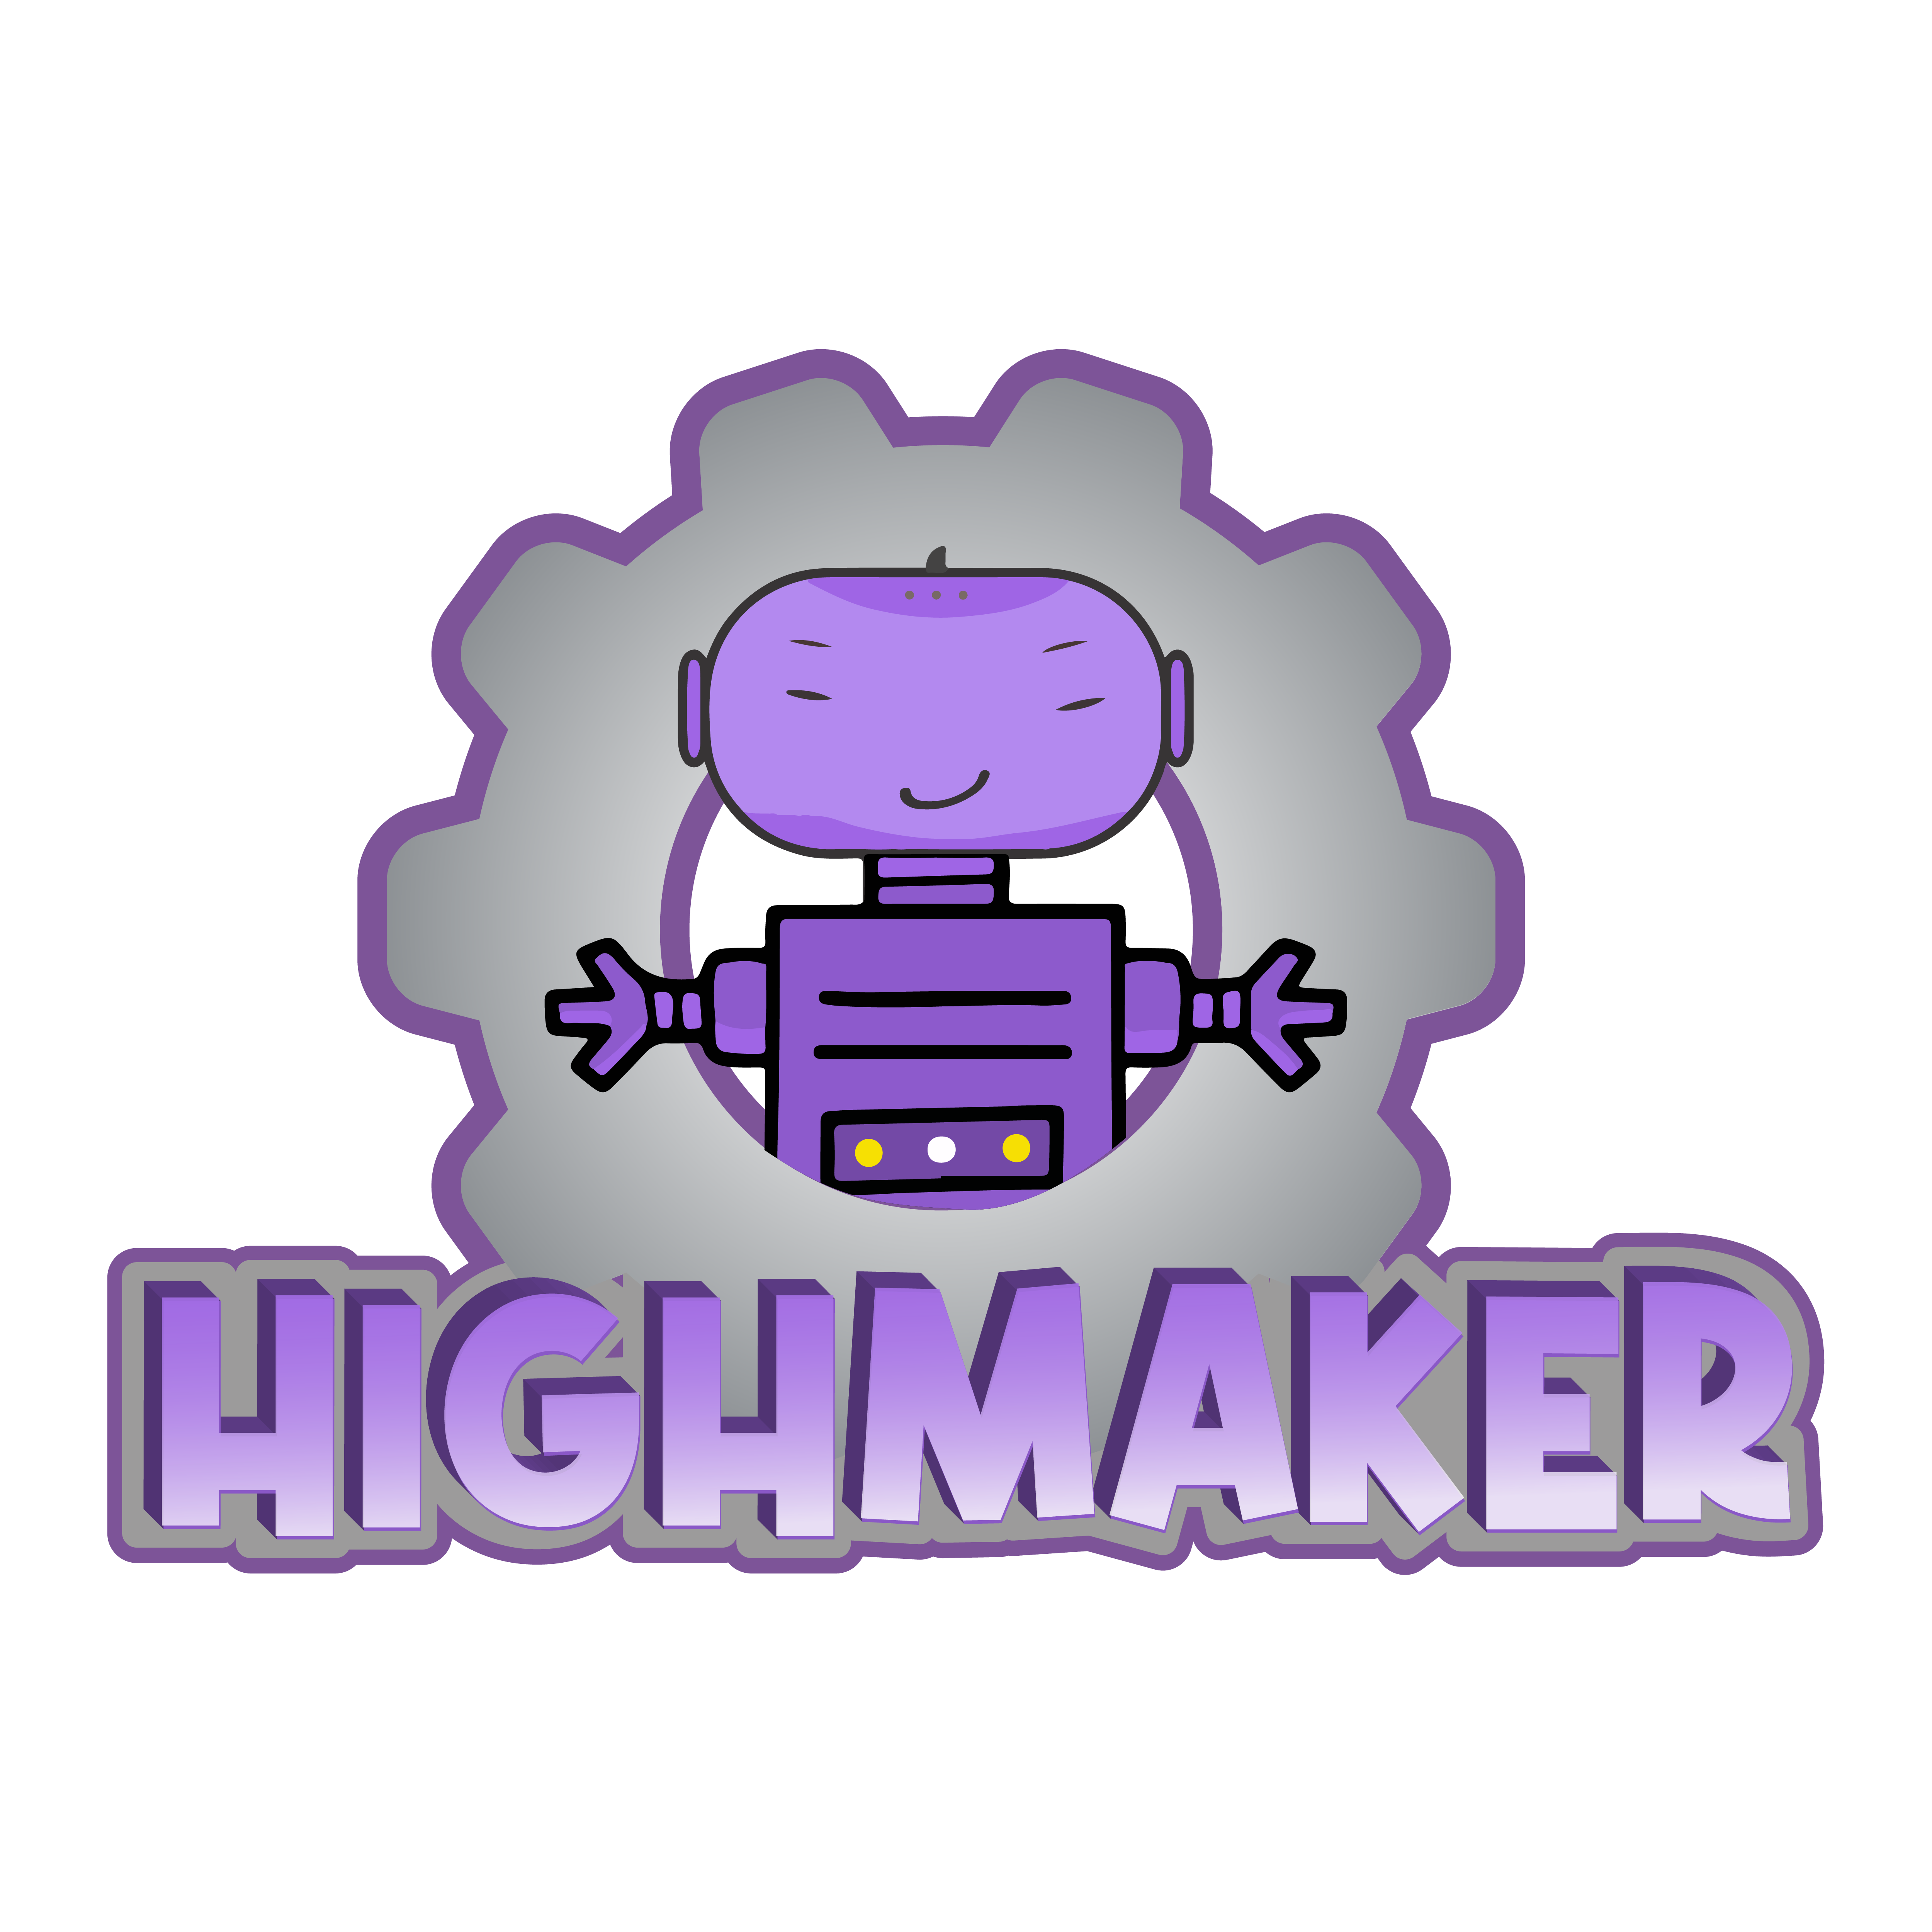 High Maker Avanzado